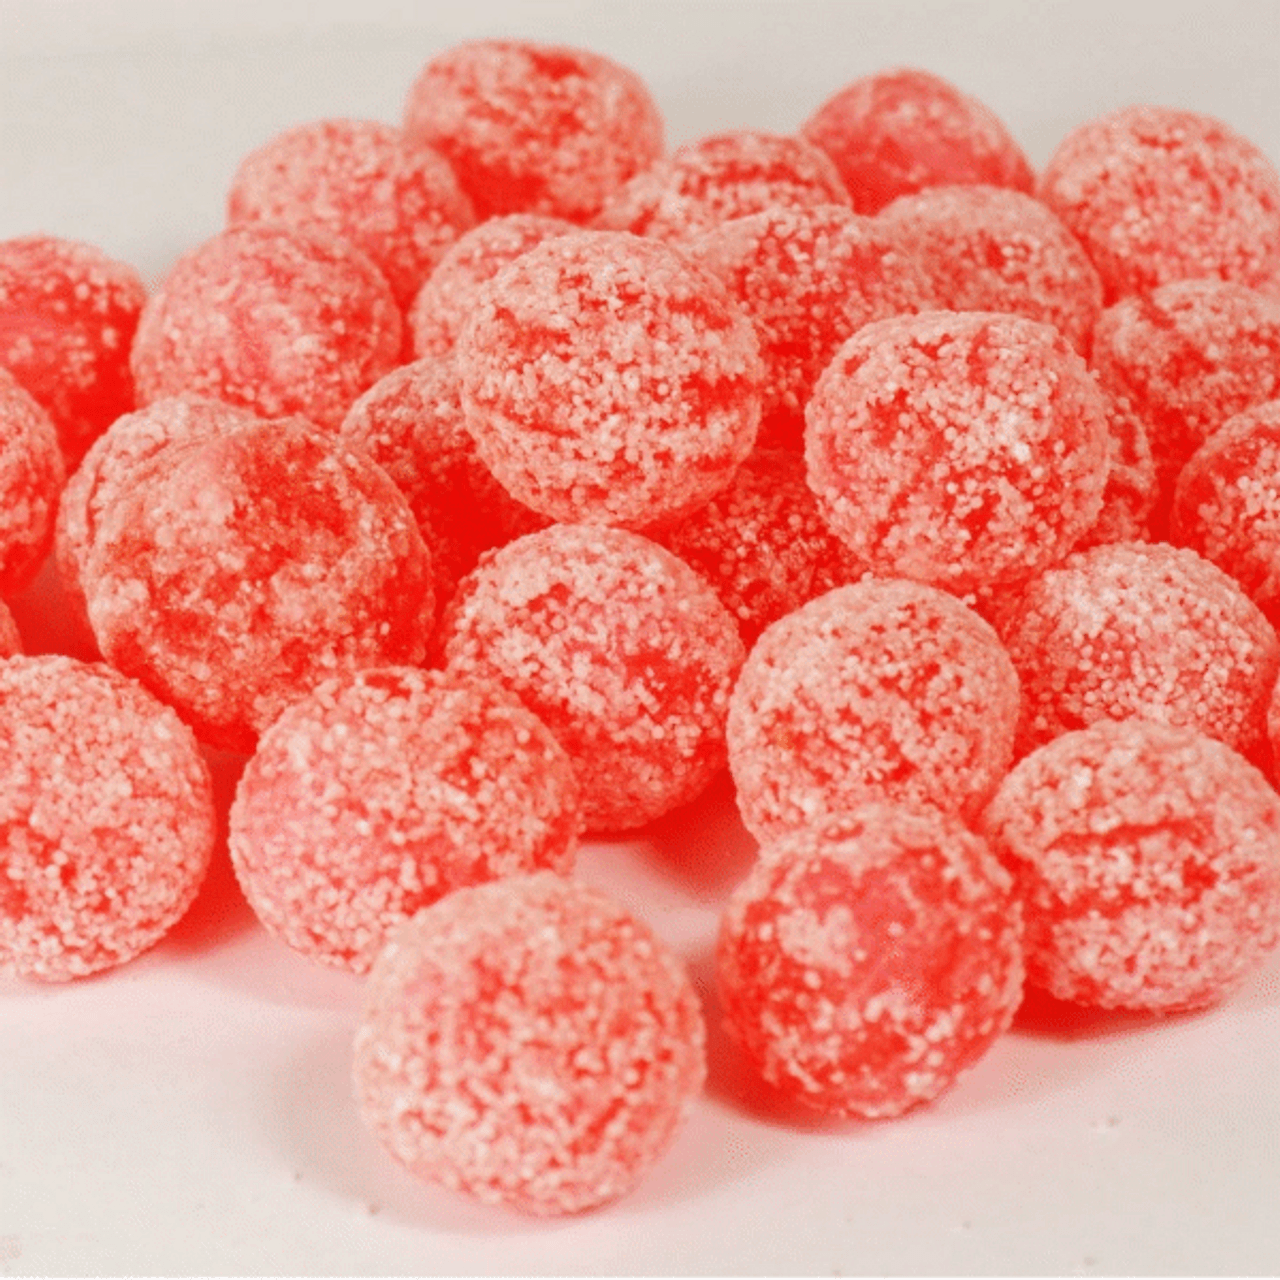 Mega Sour Cherries by Barnetts